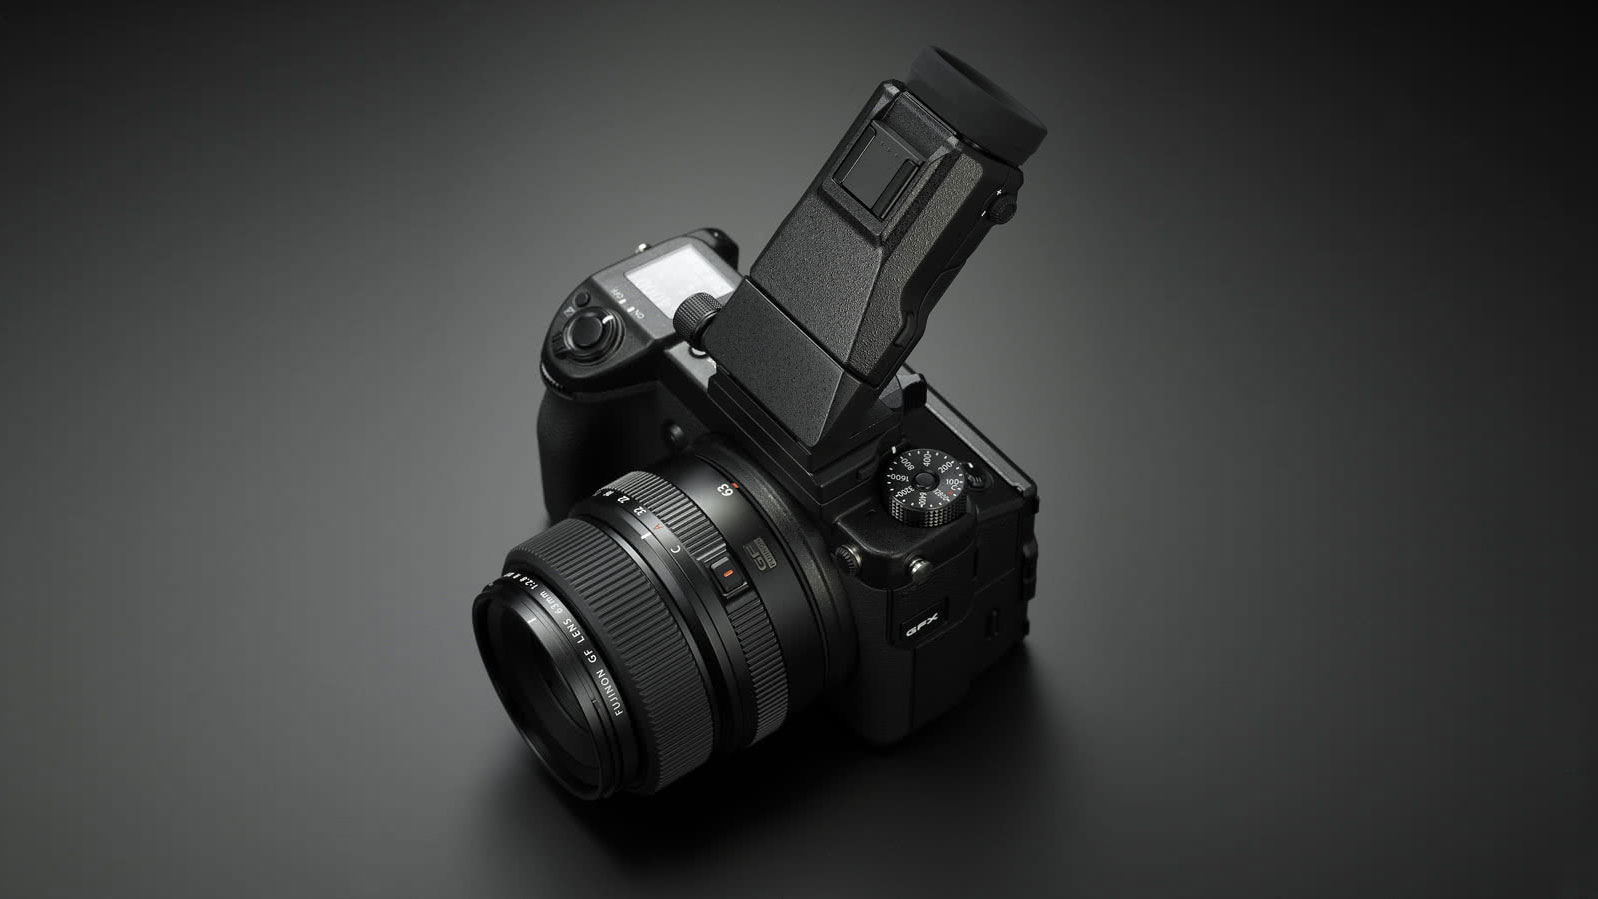 Fujifilm GFX 50S Mark II sẽ có giá 4000 USD và ra mắt vào tháng 9